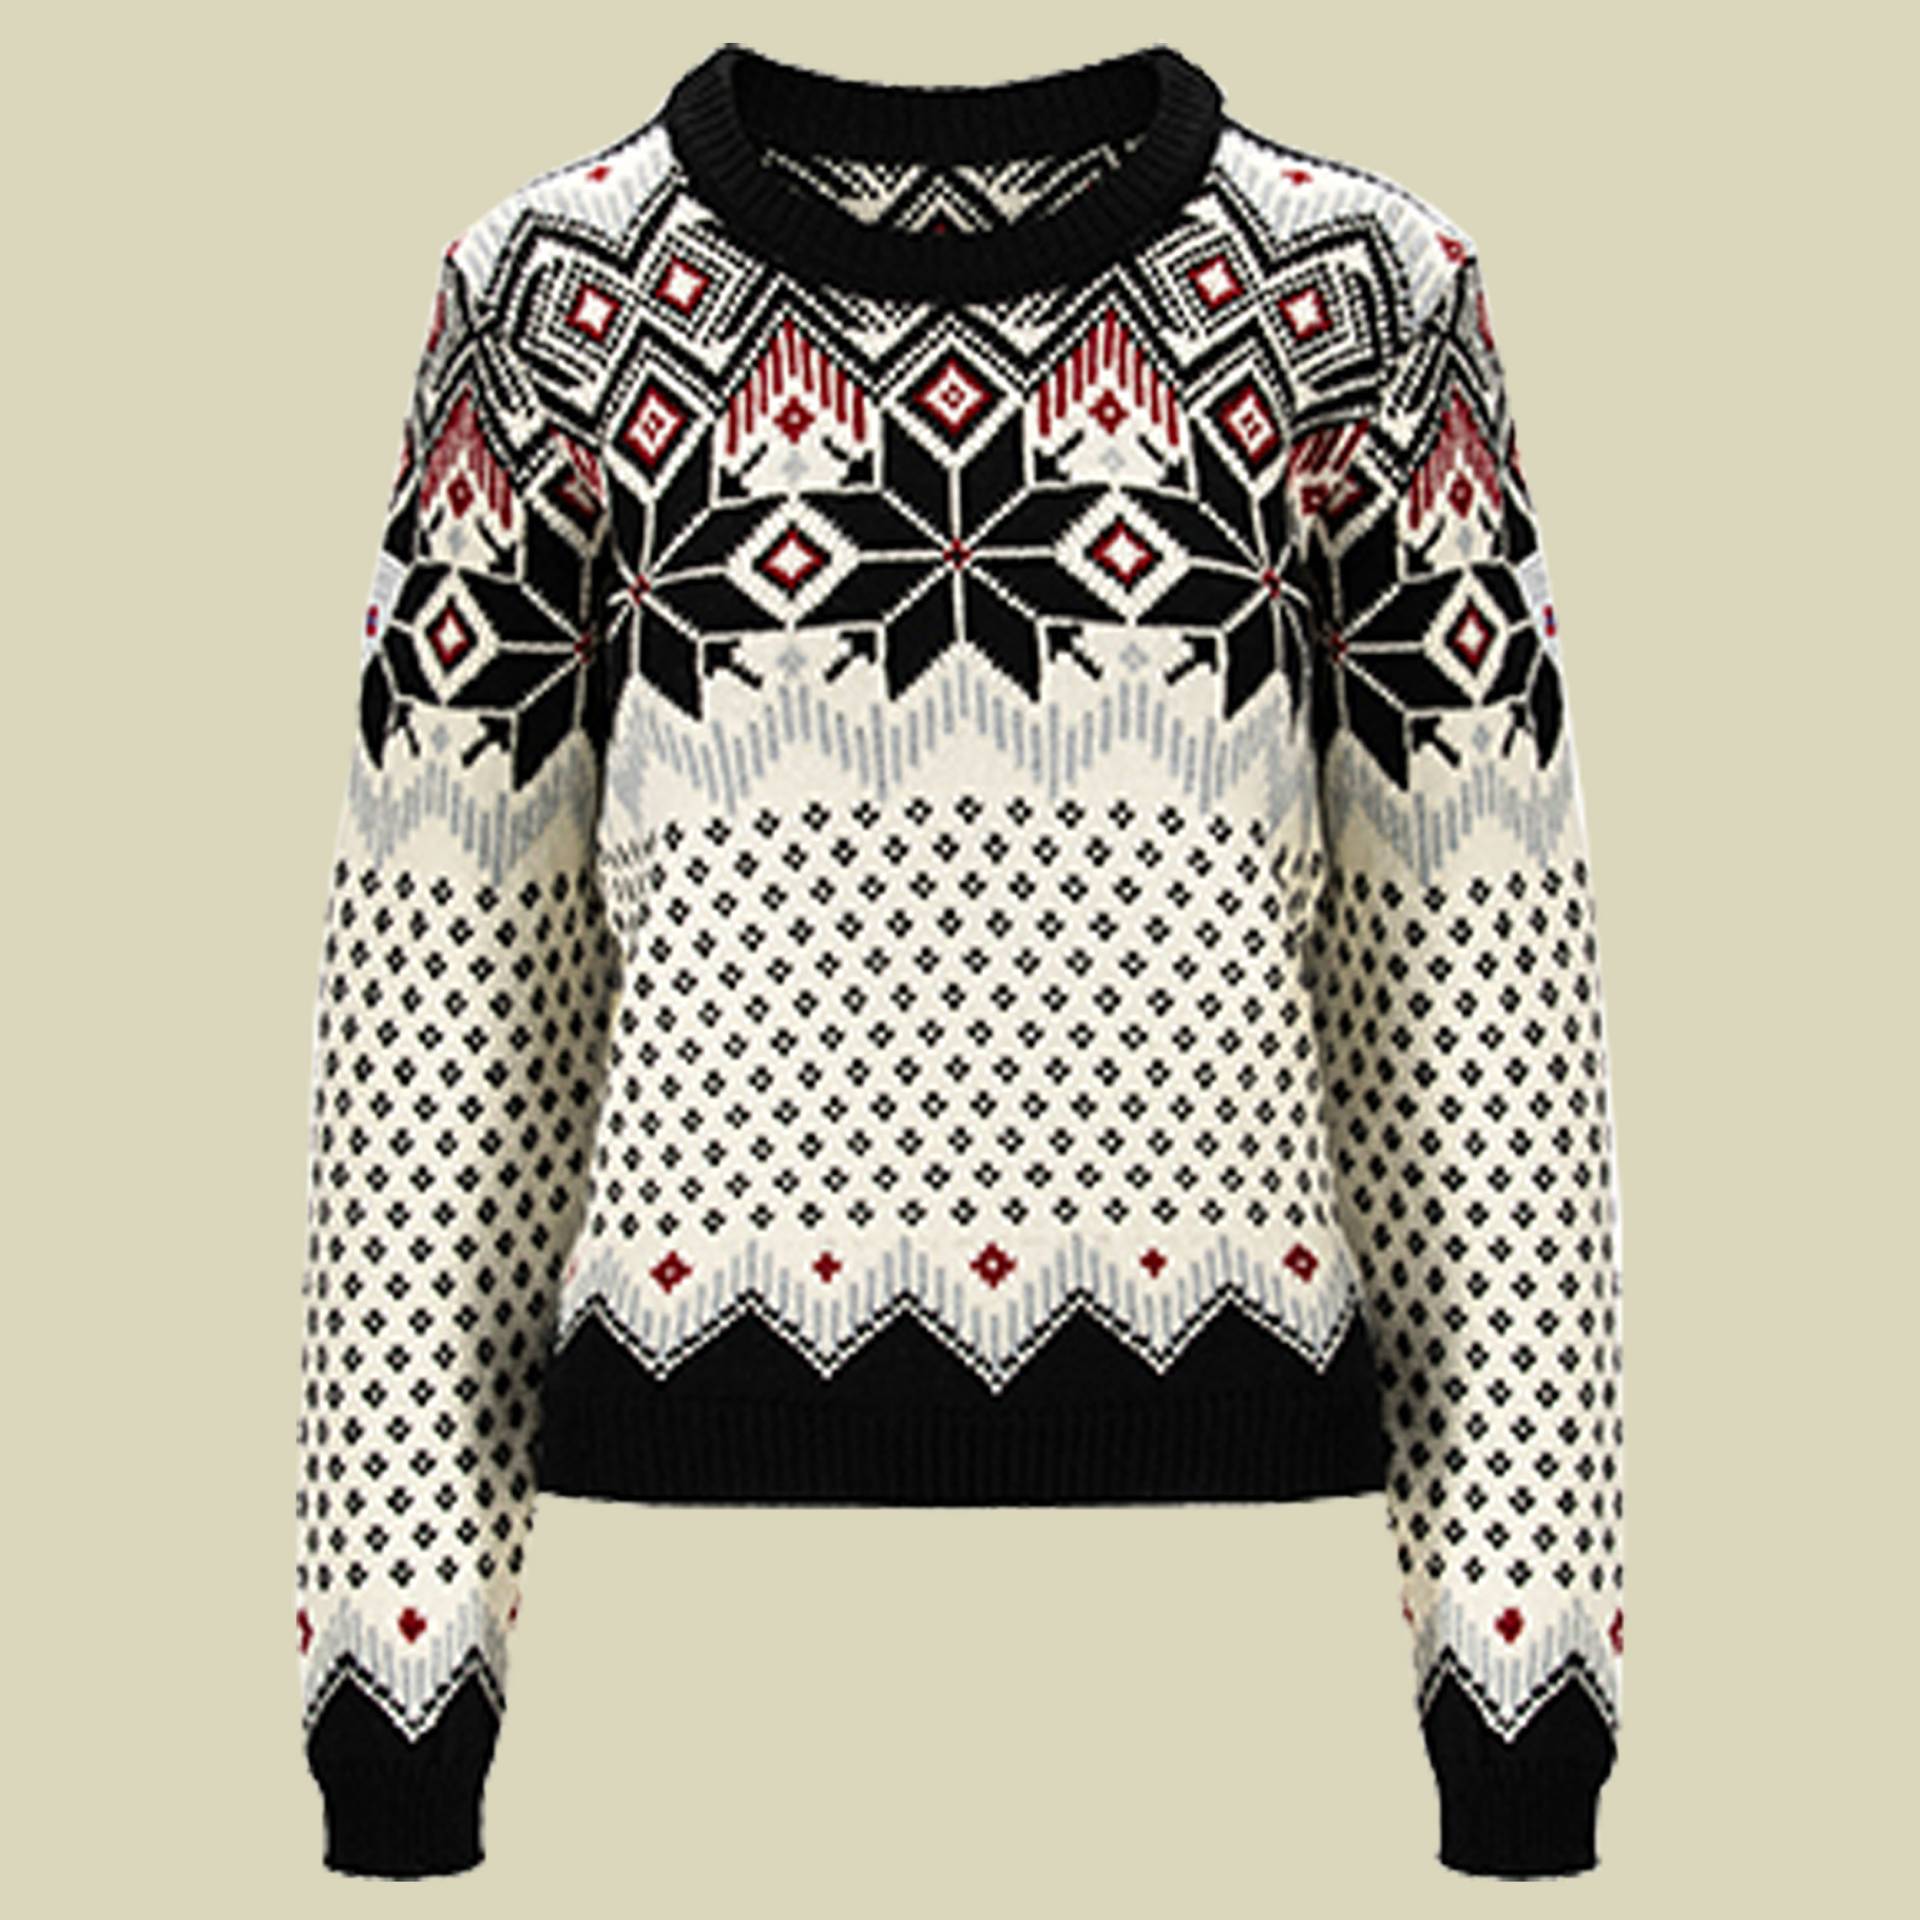 Vilja Sweater Women Größe S Farbe black/off white/red rose von Dale of Norway